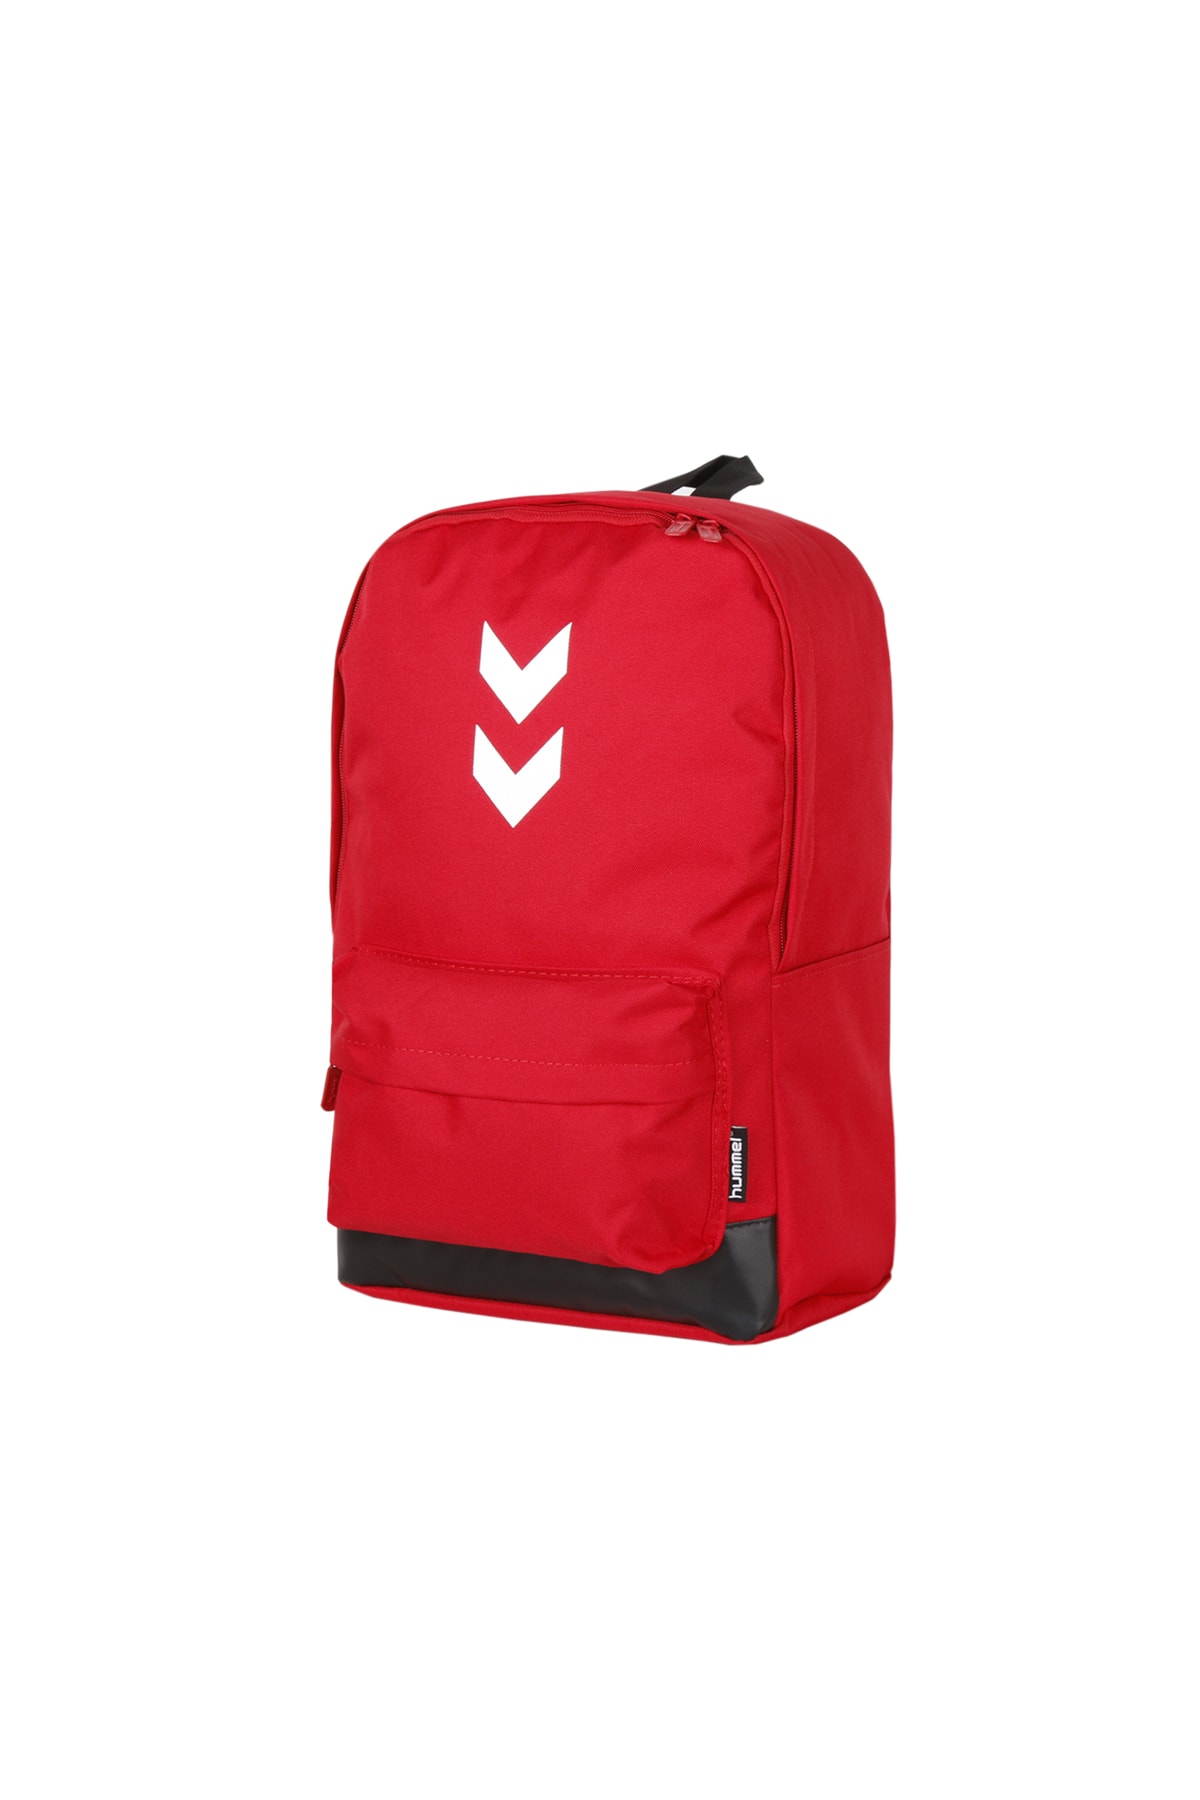 HUMMEL Limburg Bag Pack Sırt Çantası 980217-3658 Kırmızı